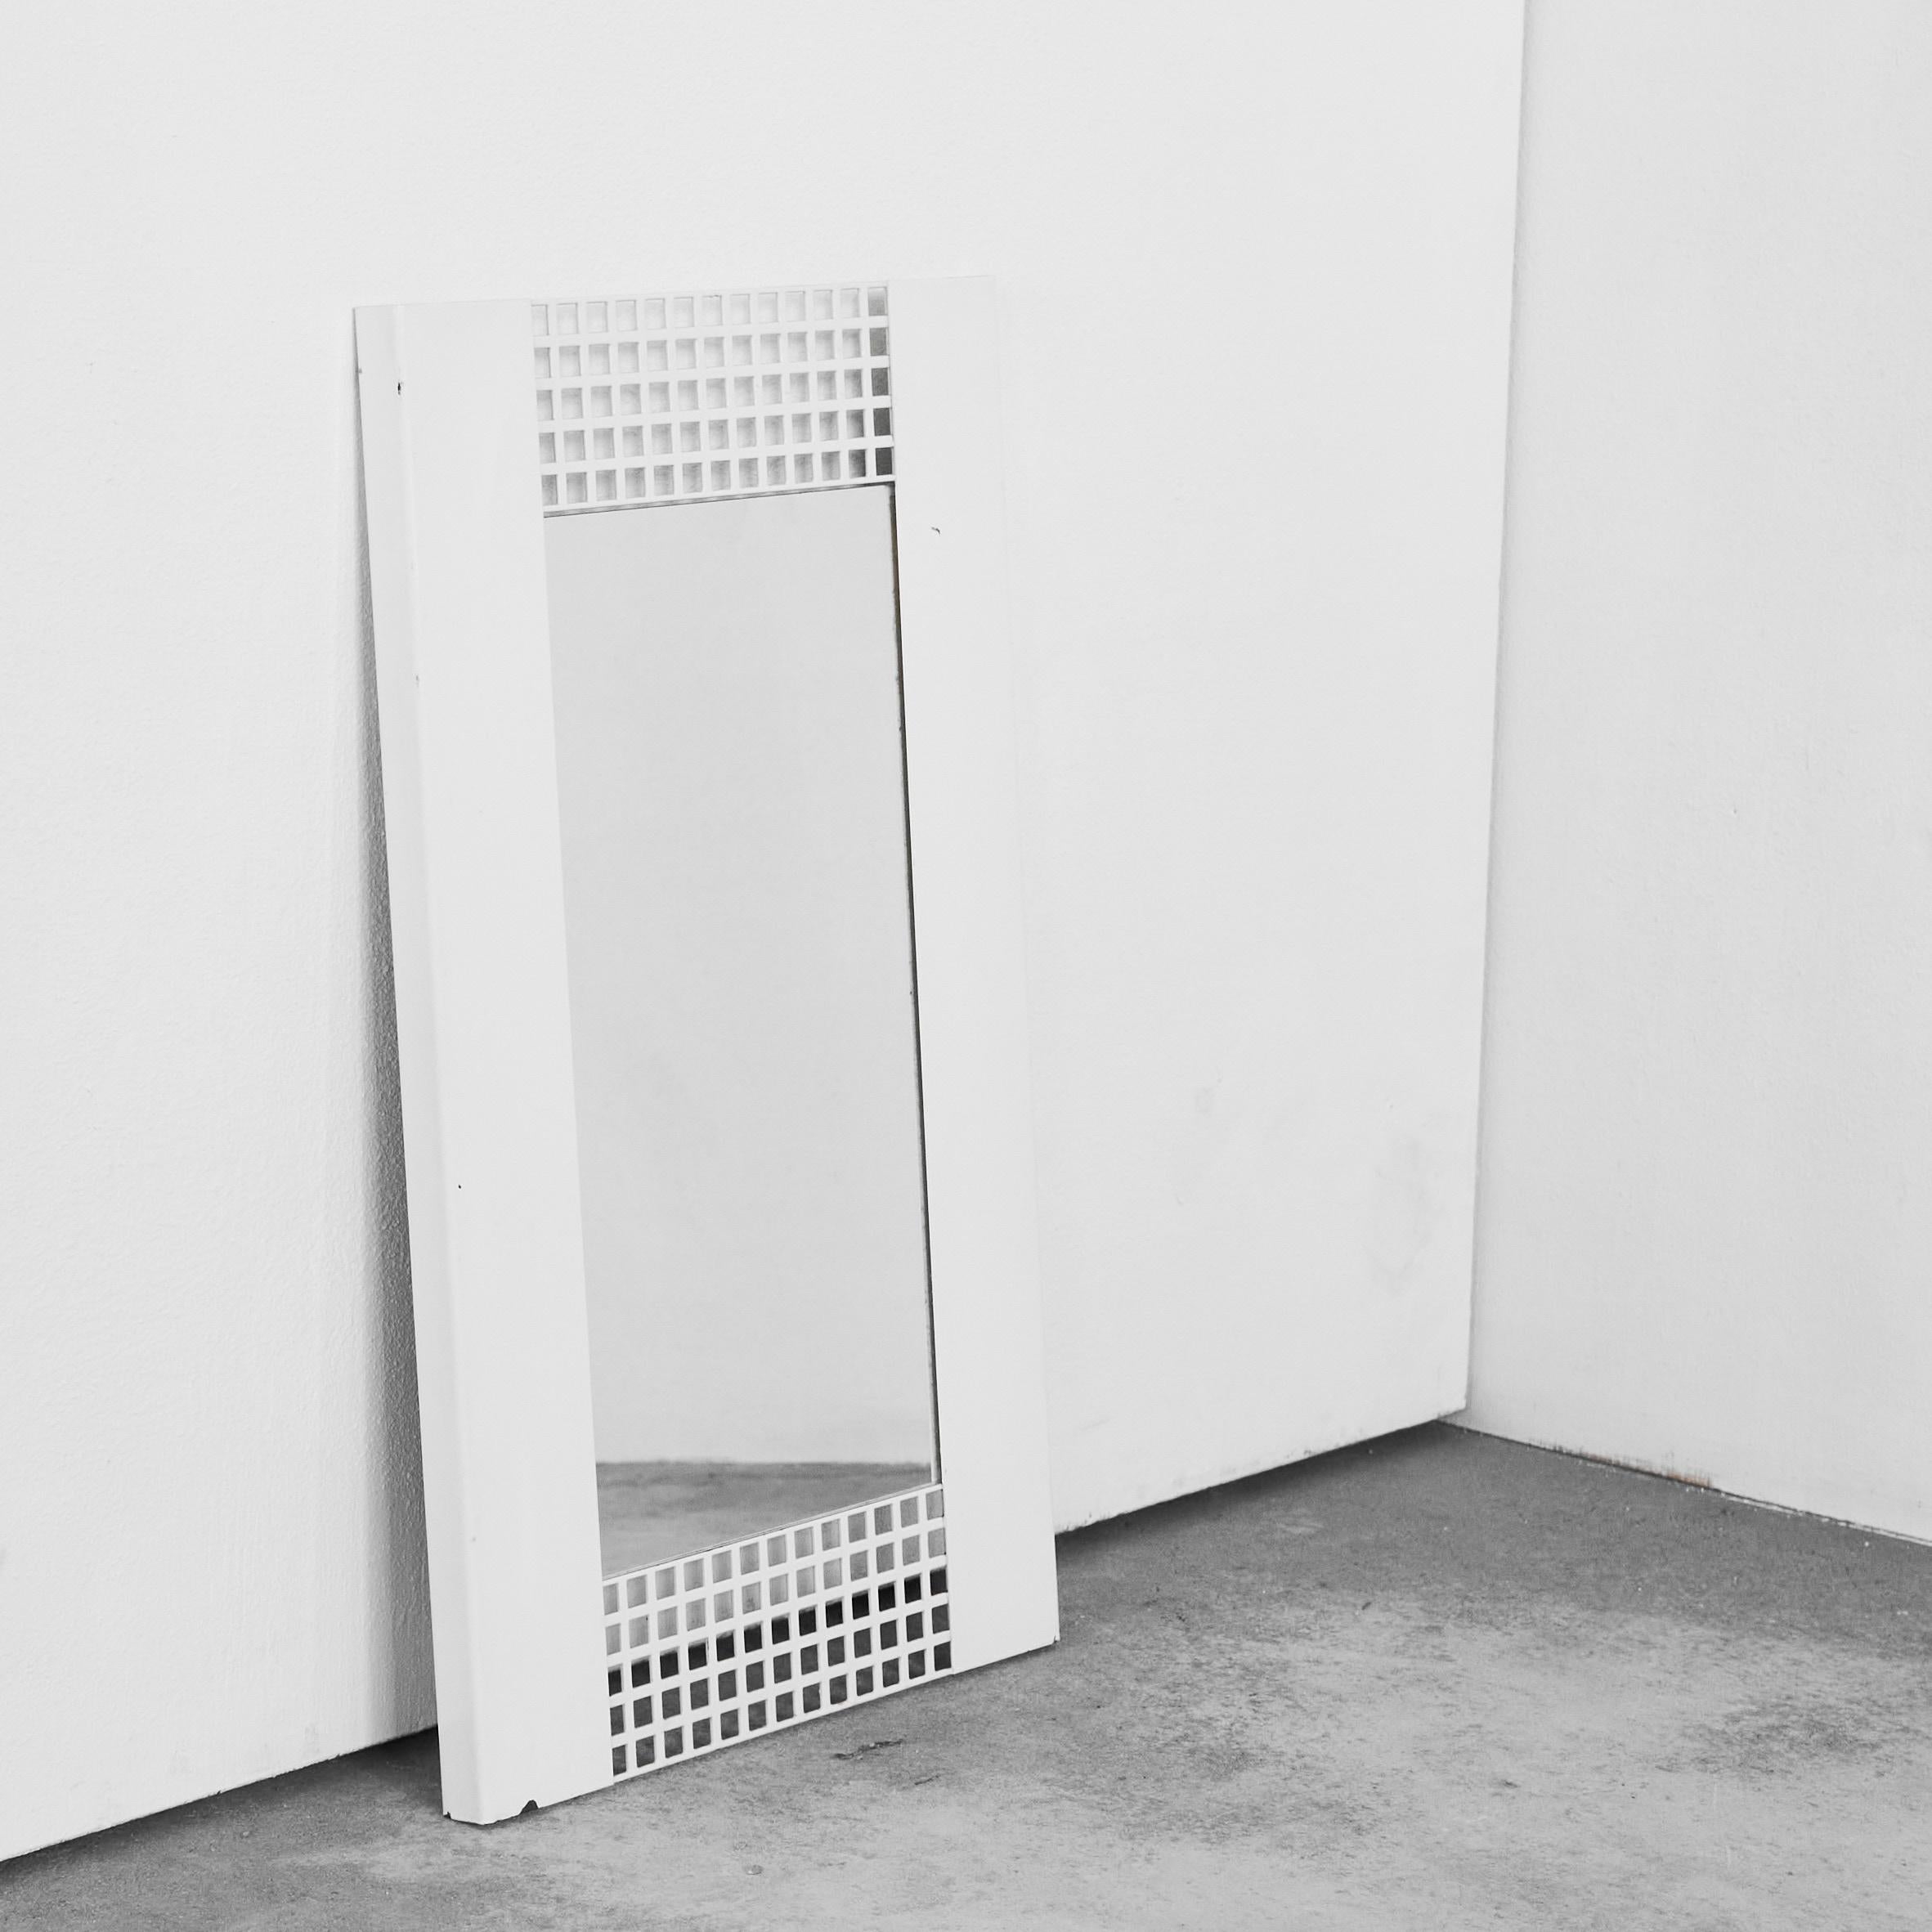 Miroir de style Josef Hoffmann en métal laqué blanc années 1970.

Magnifique et particulier miroir en métal laqué blanc dans un style distinct rappelant les œuvres de Josef Hoffmann. Superbe design rectangulaire avec des trous perforés. Idéal dans